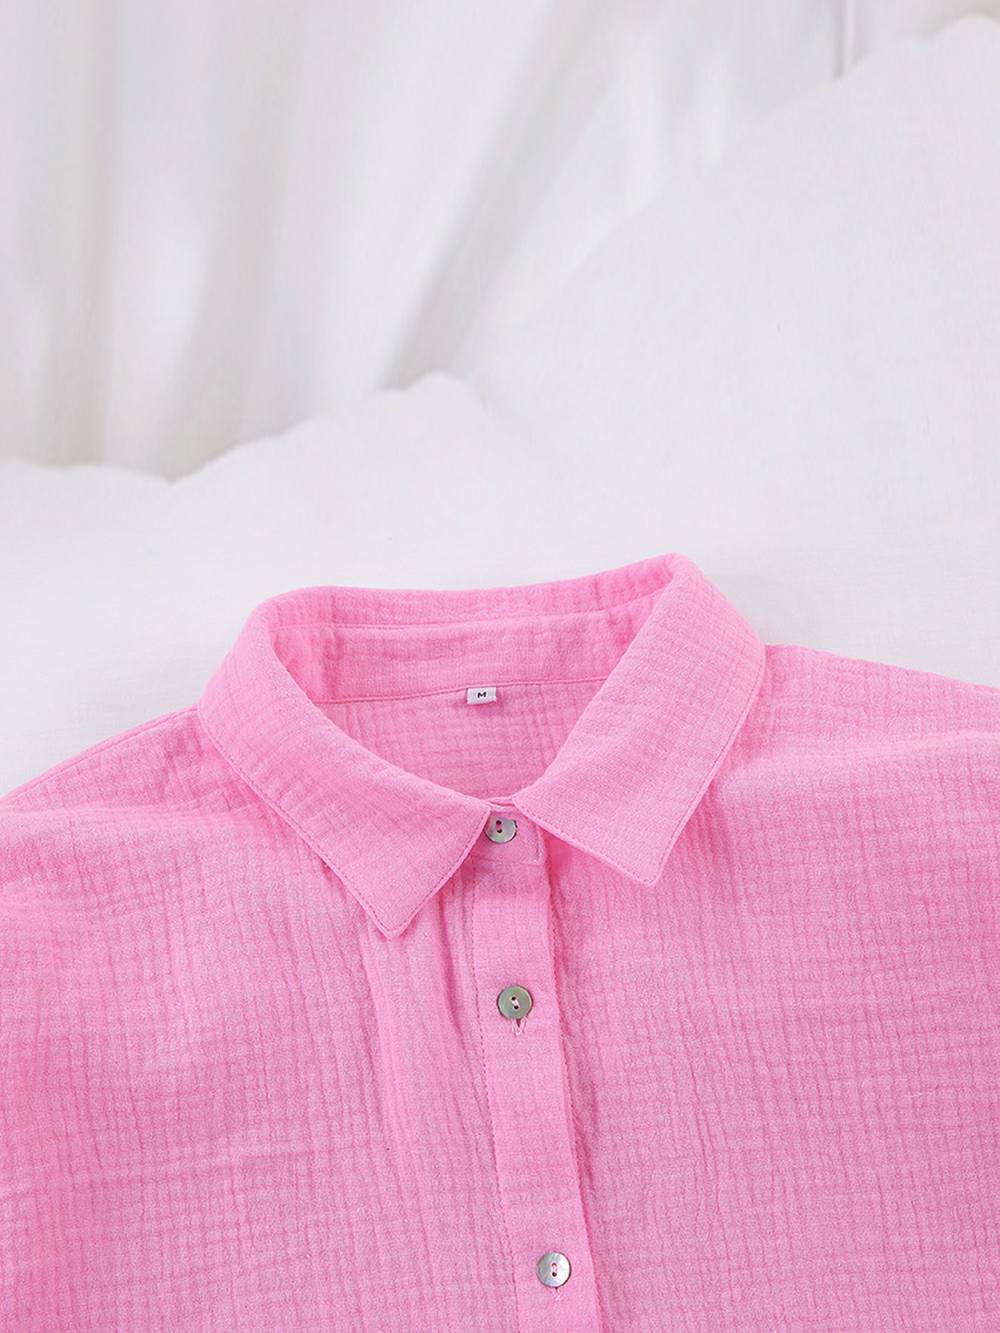 Conjunto de pantalones cortos rosas de conjunto de algodón intrincado